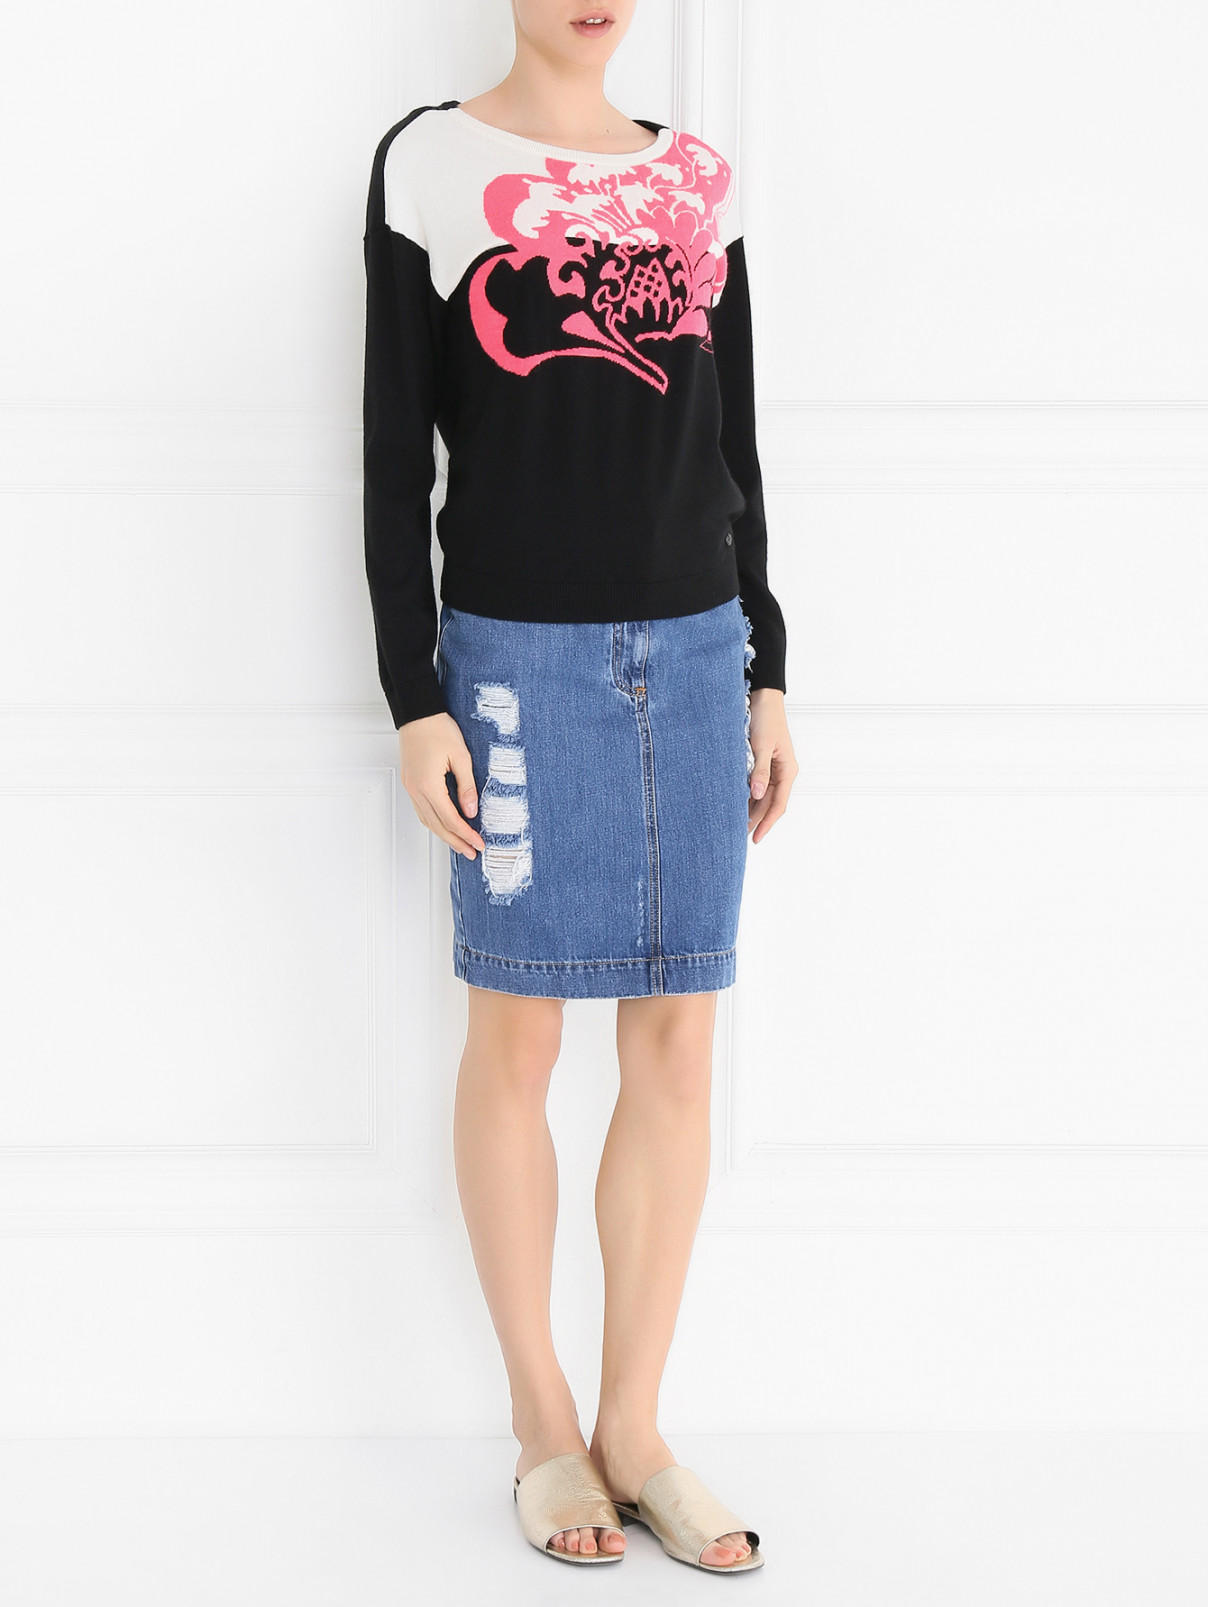 Джемпер с длинным рукавом и контрастным принтом Armani Jeans  –  Модель Общий вид  – Цвет:  Черный